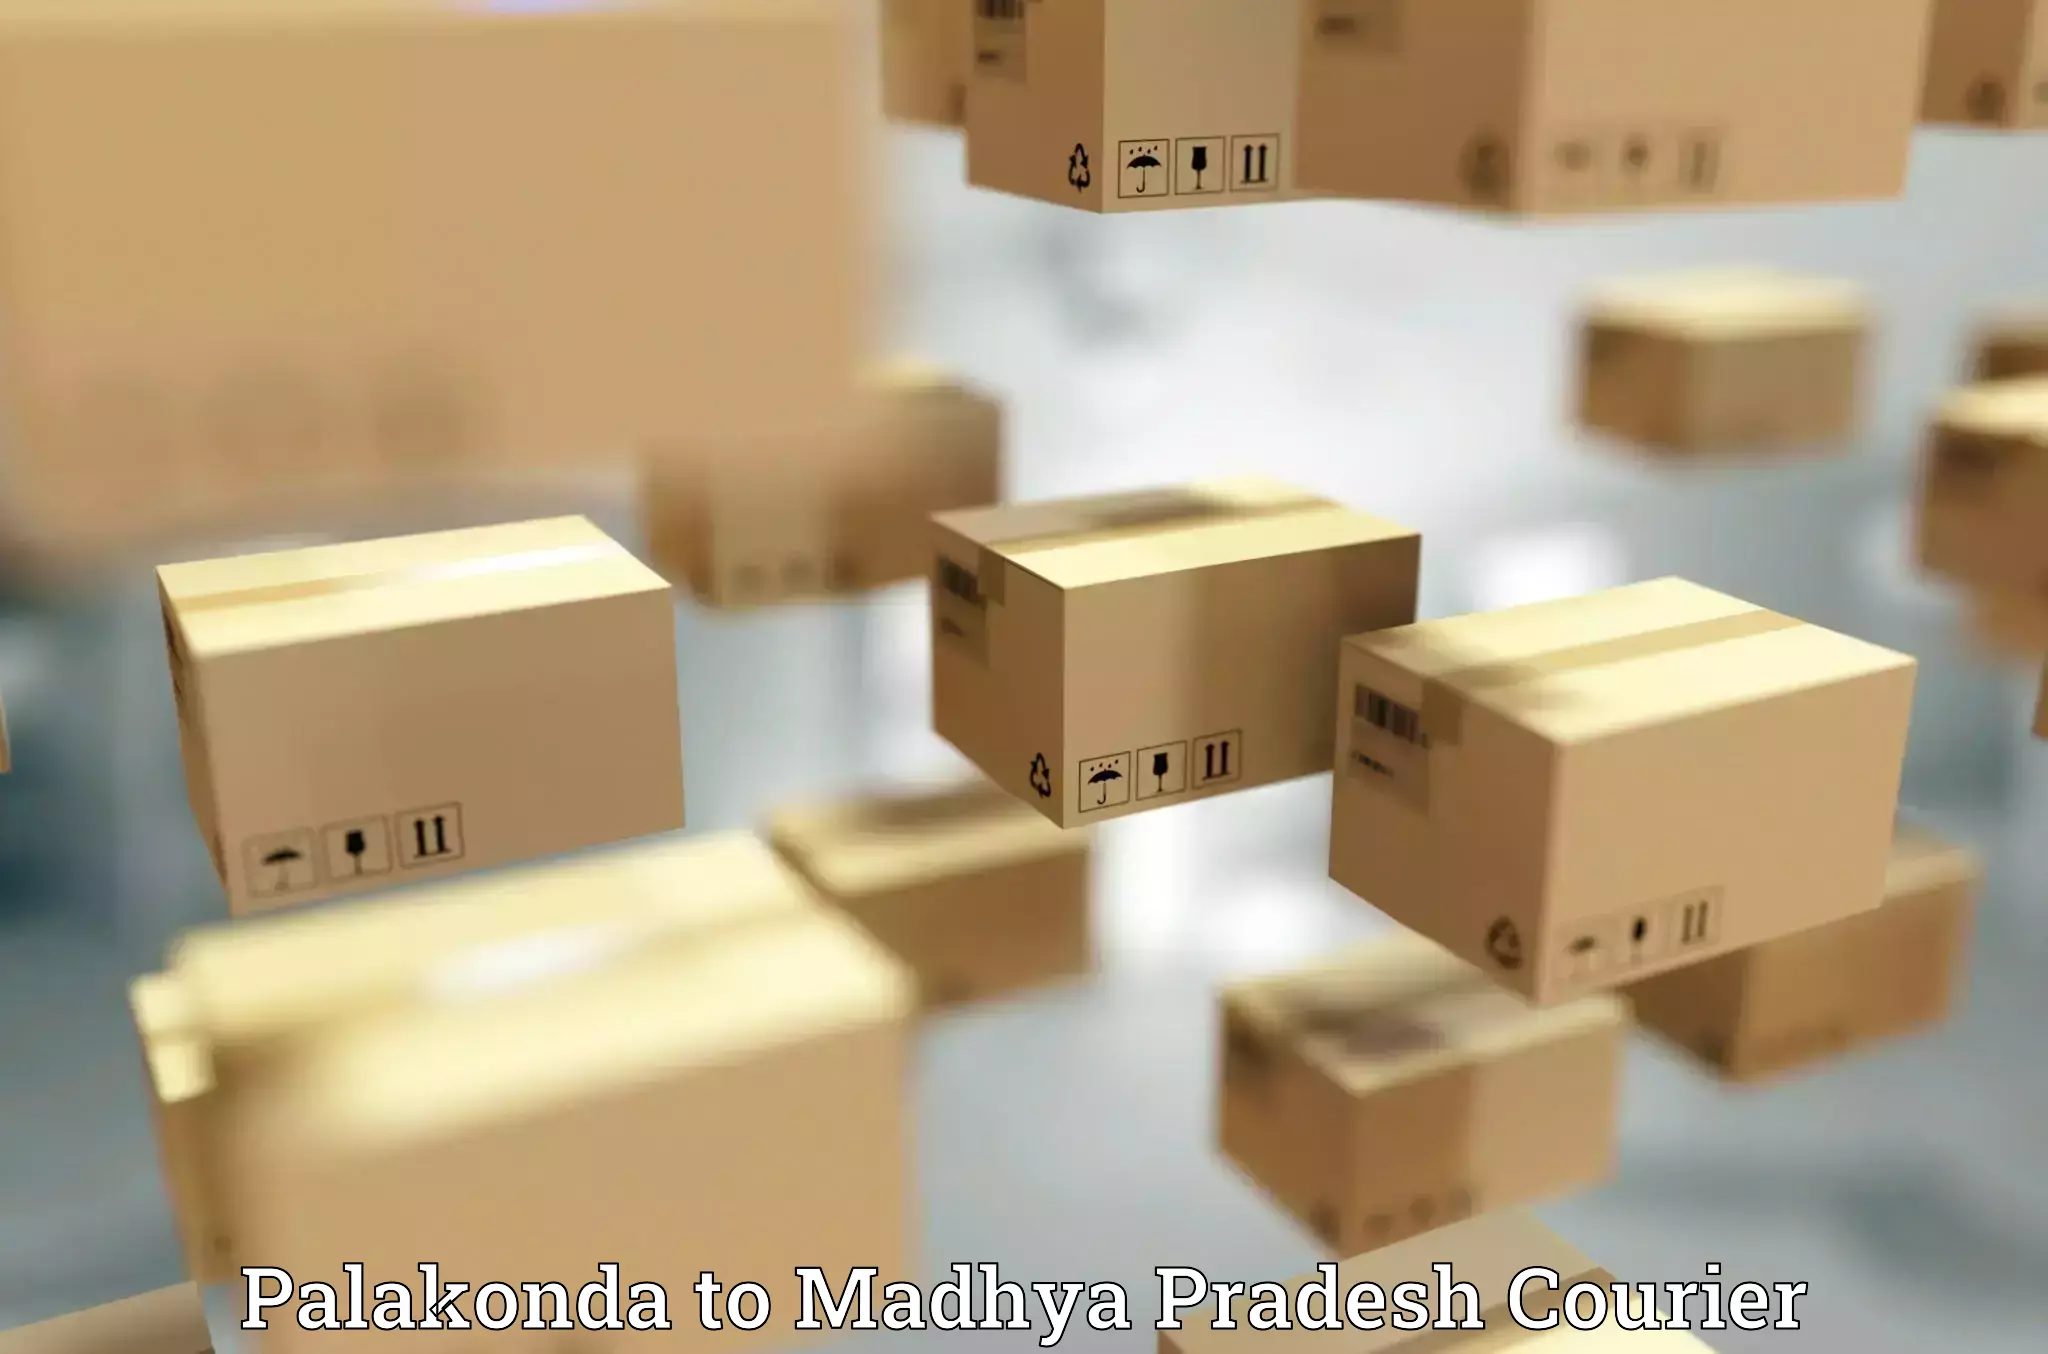 Next day courier in Palakonda to Madhya Pradesh